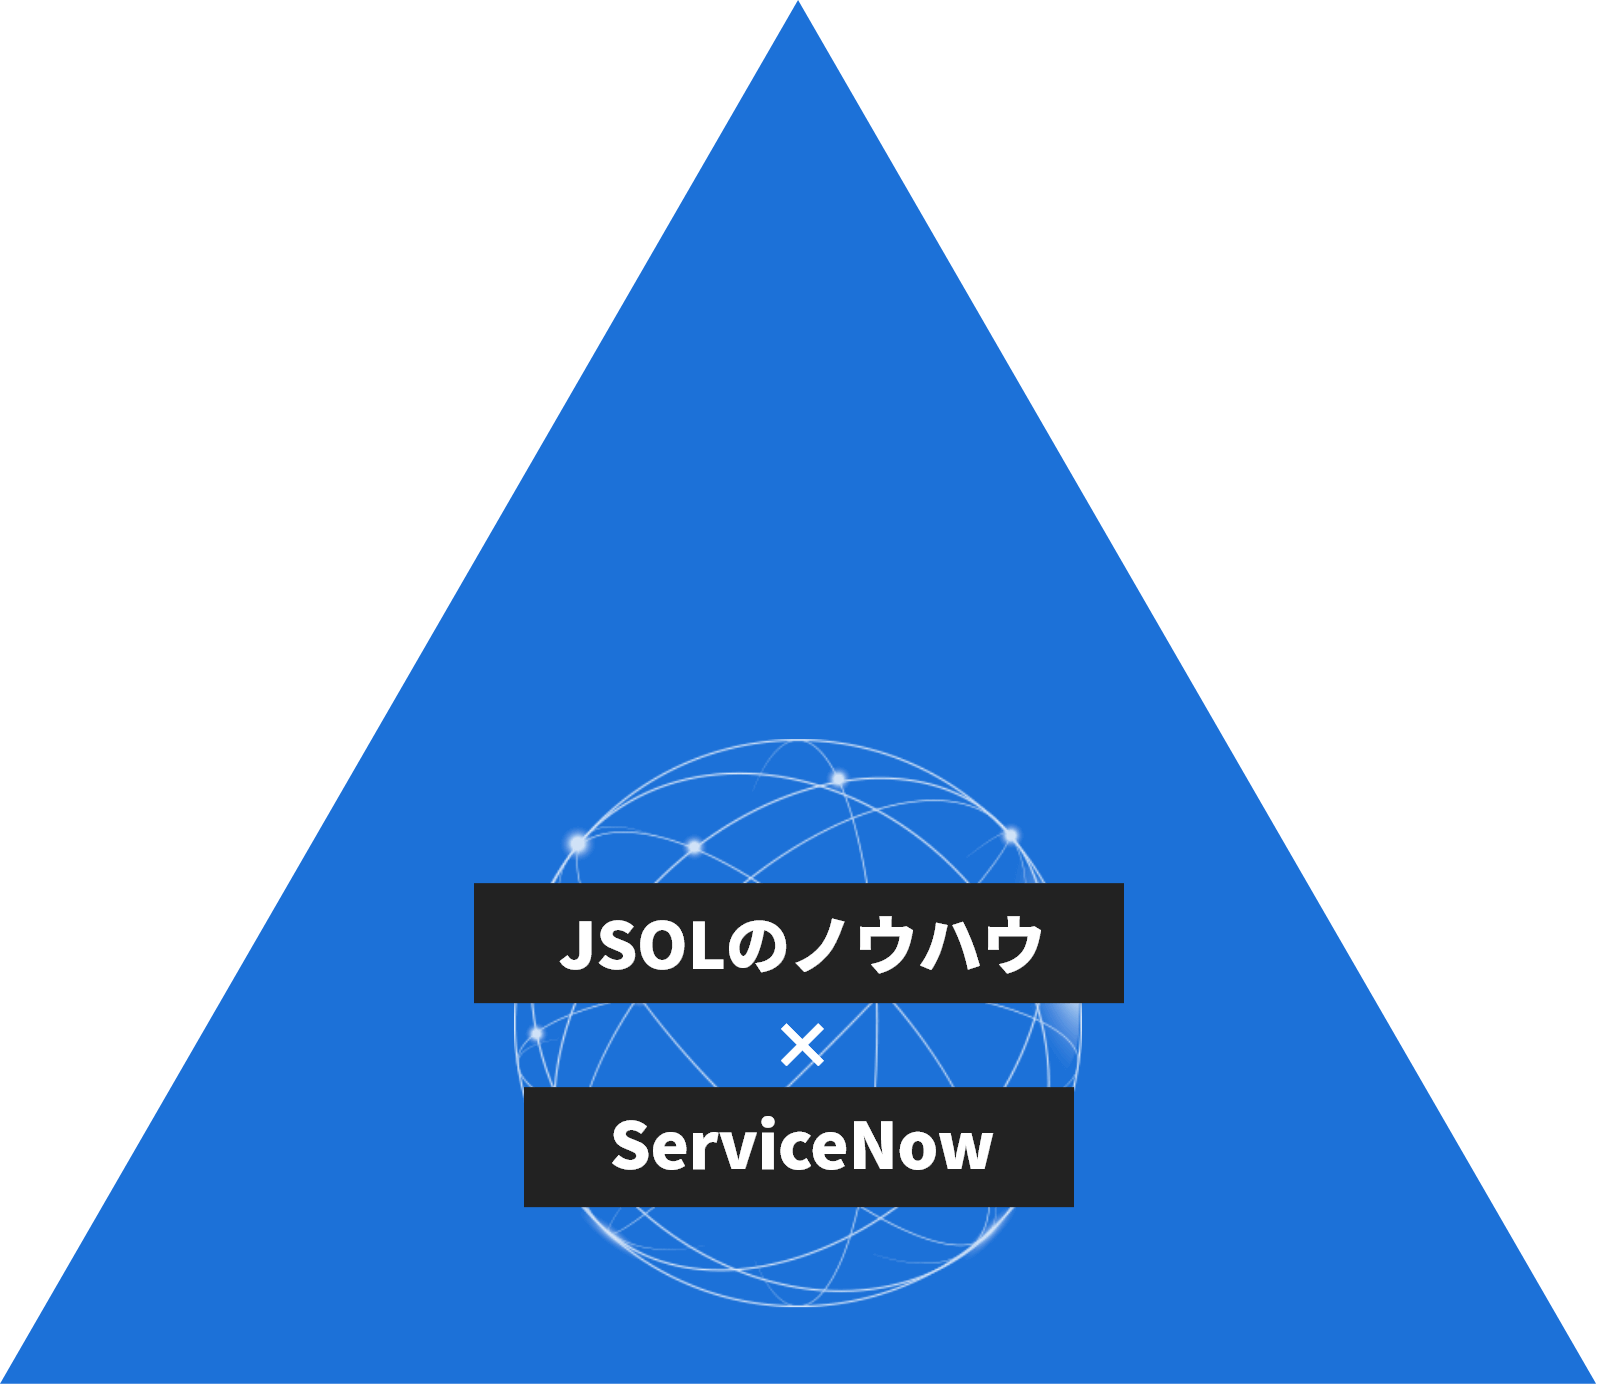 JSOLのノウハウ×ServiceNow